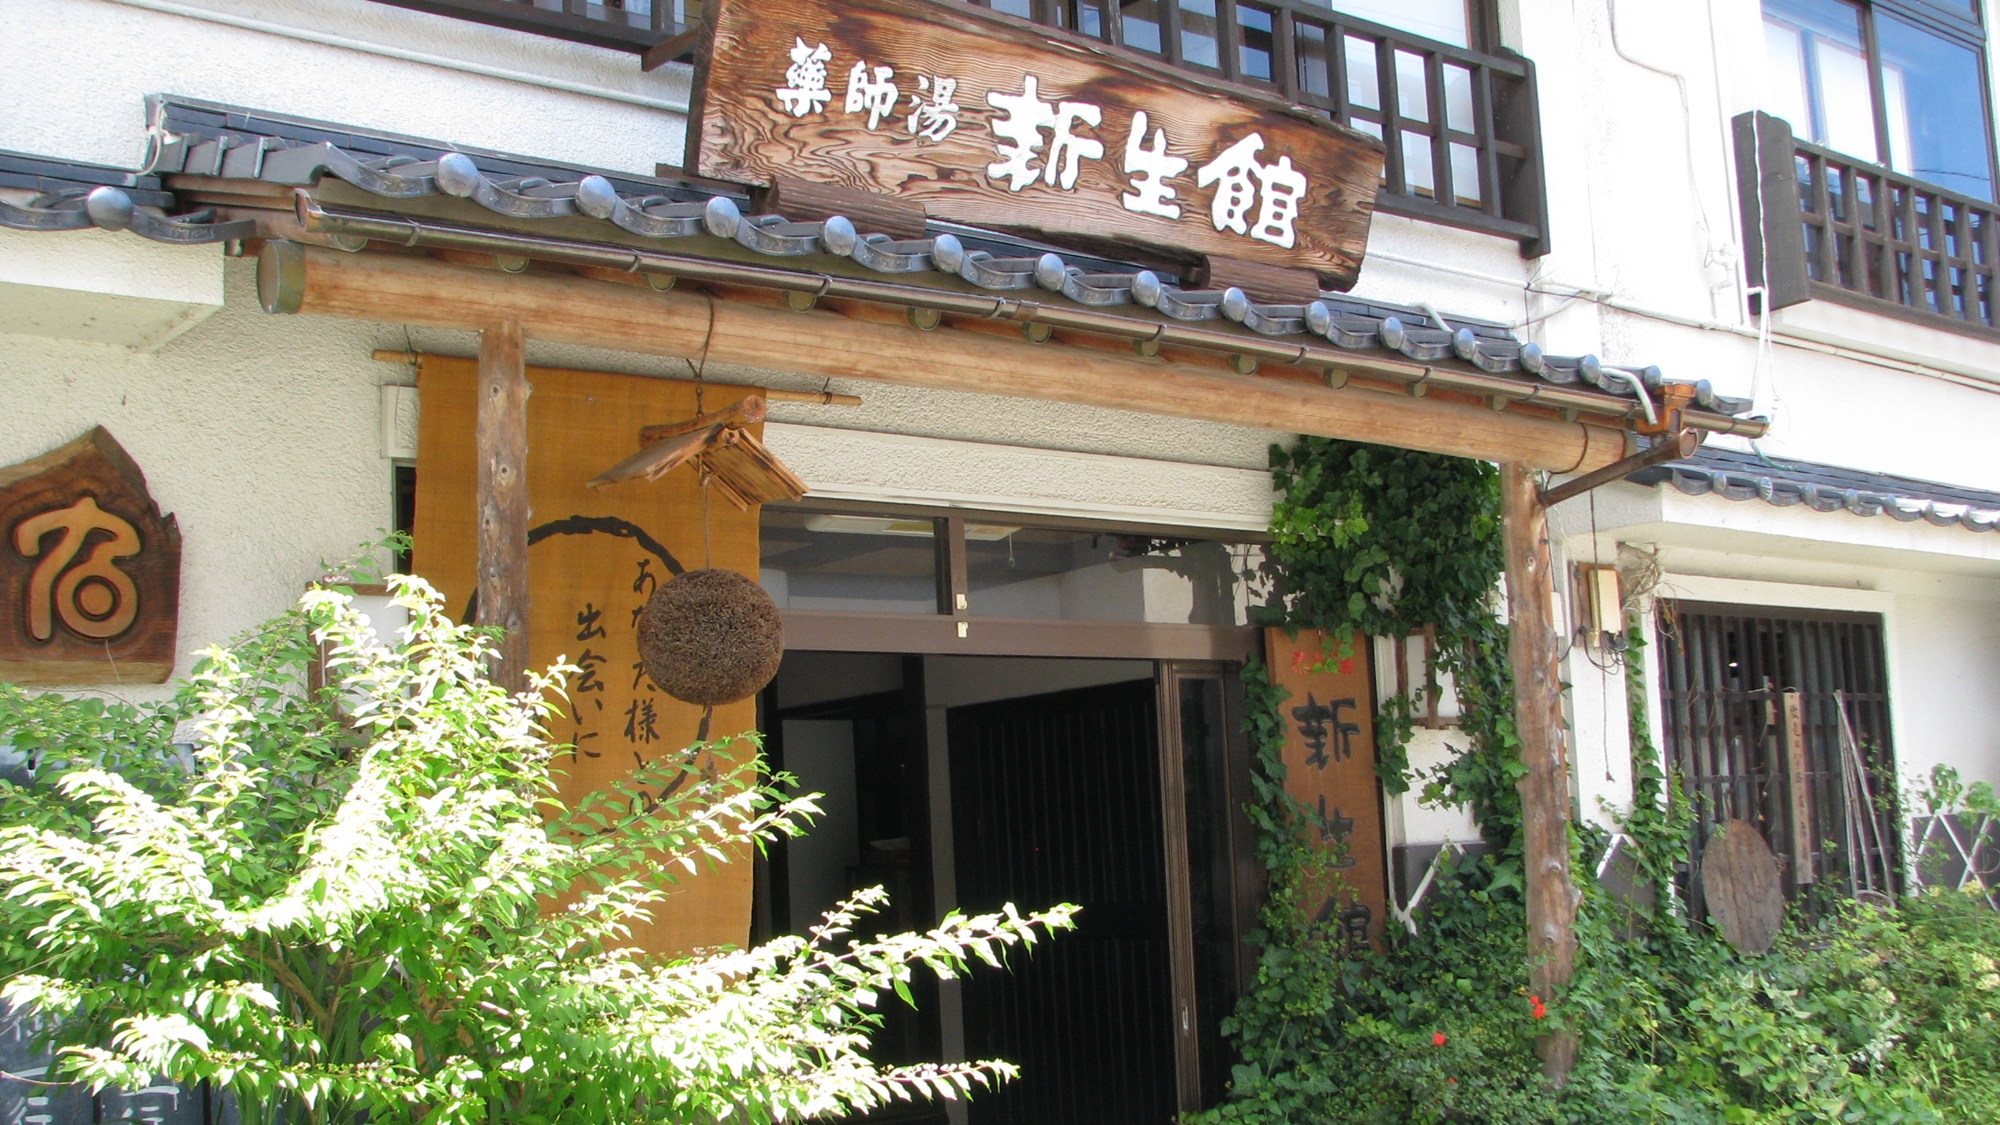 ひなびた温泉、鳥取の吉岡温泉へ同僚と遊びに行きます。本格的な食事が楽しめる宿